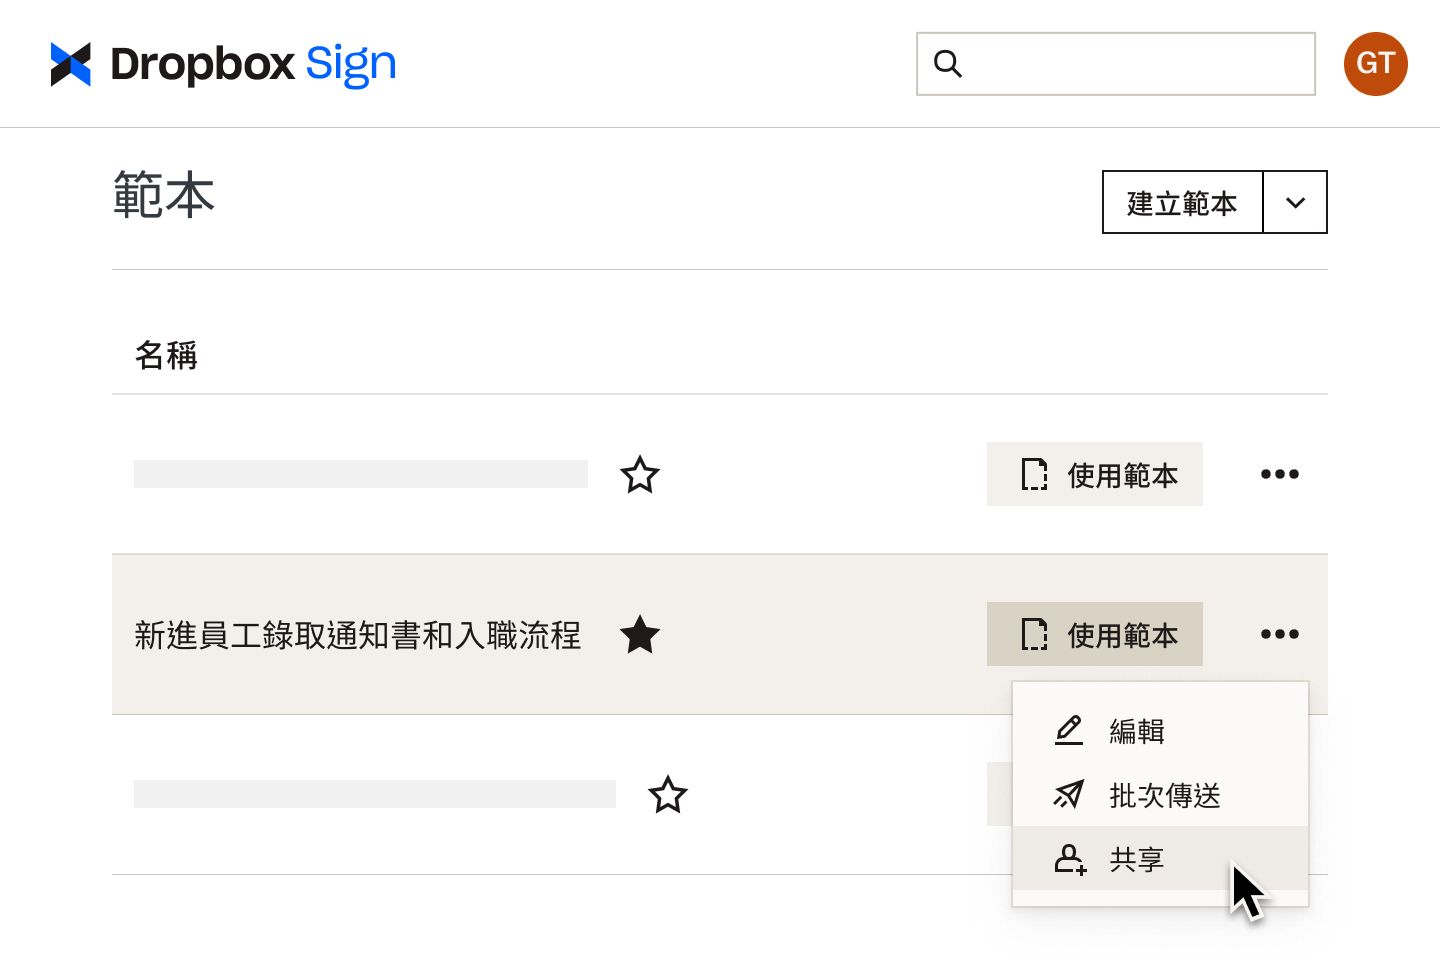 使用者在 Dropbox Sign 的入職流程範本上按下「共享」按鈕